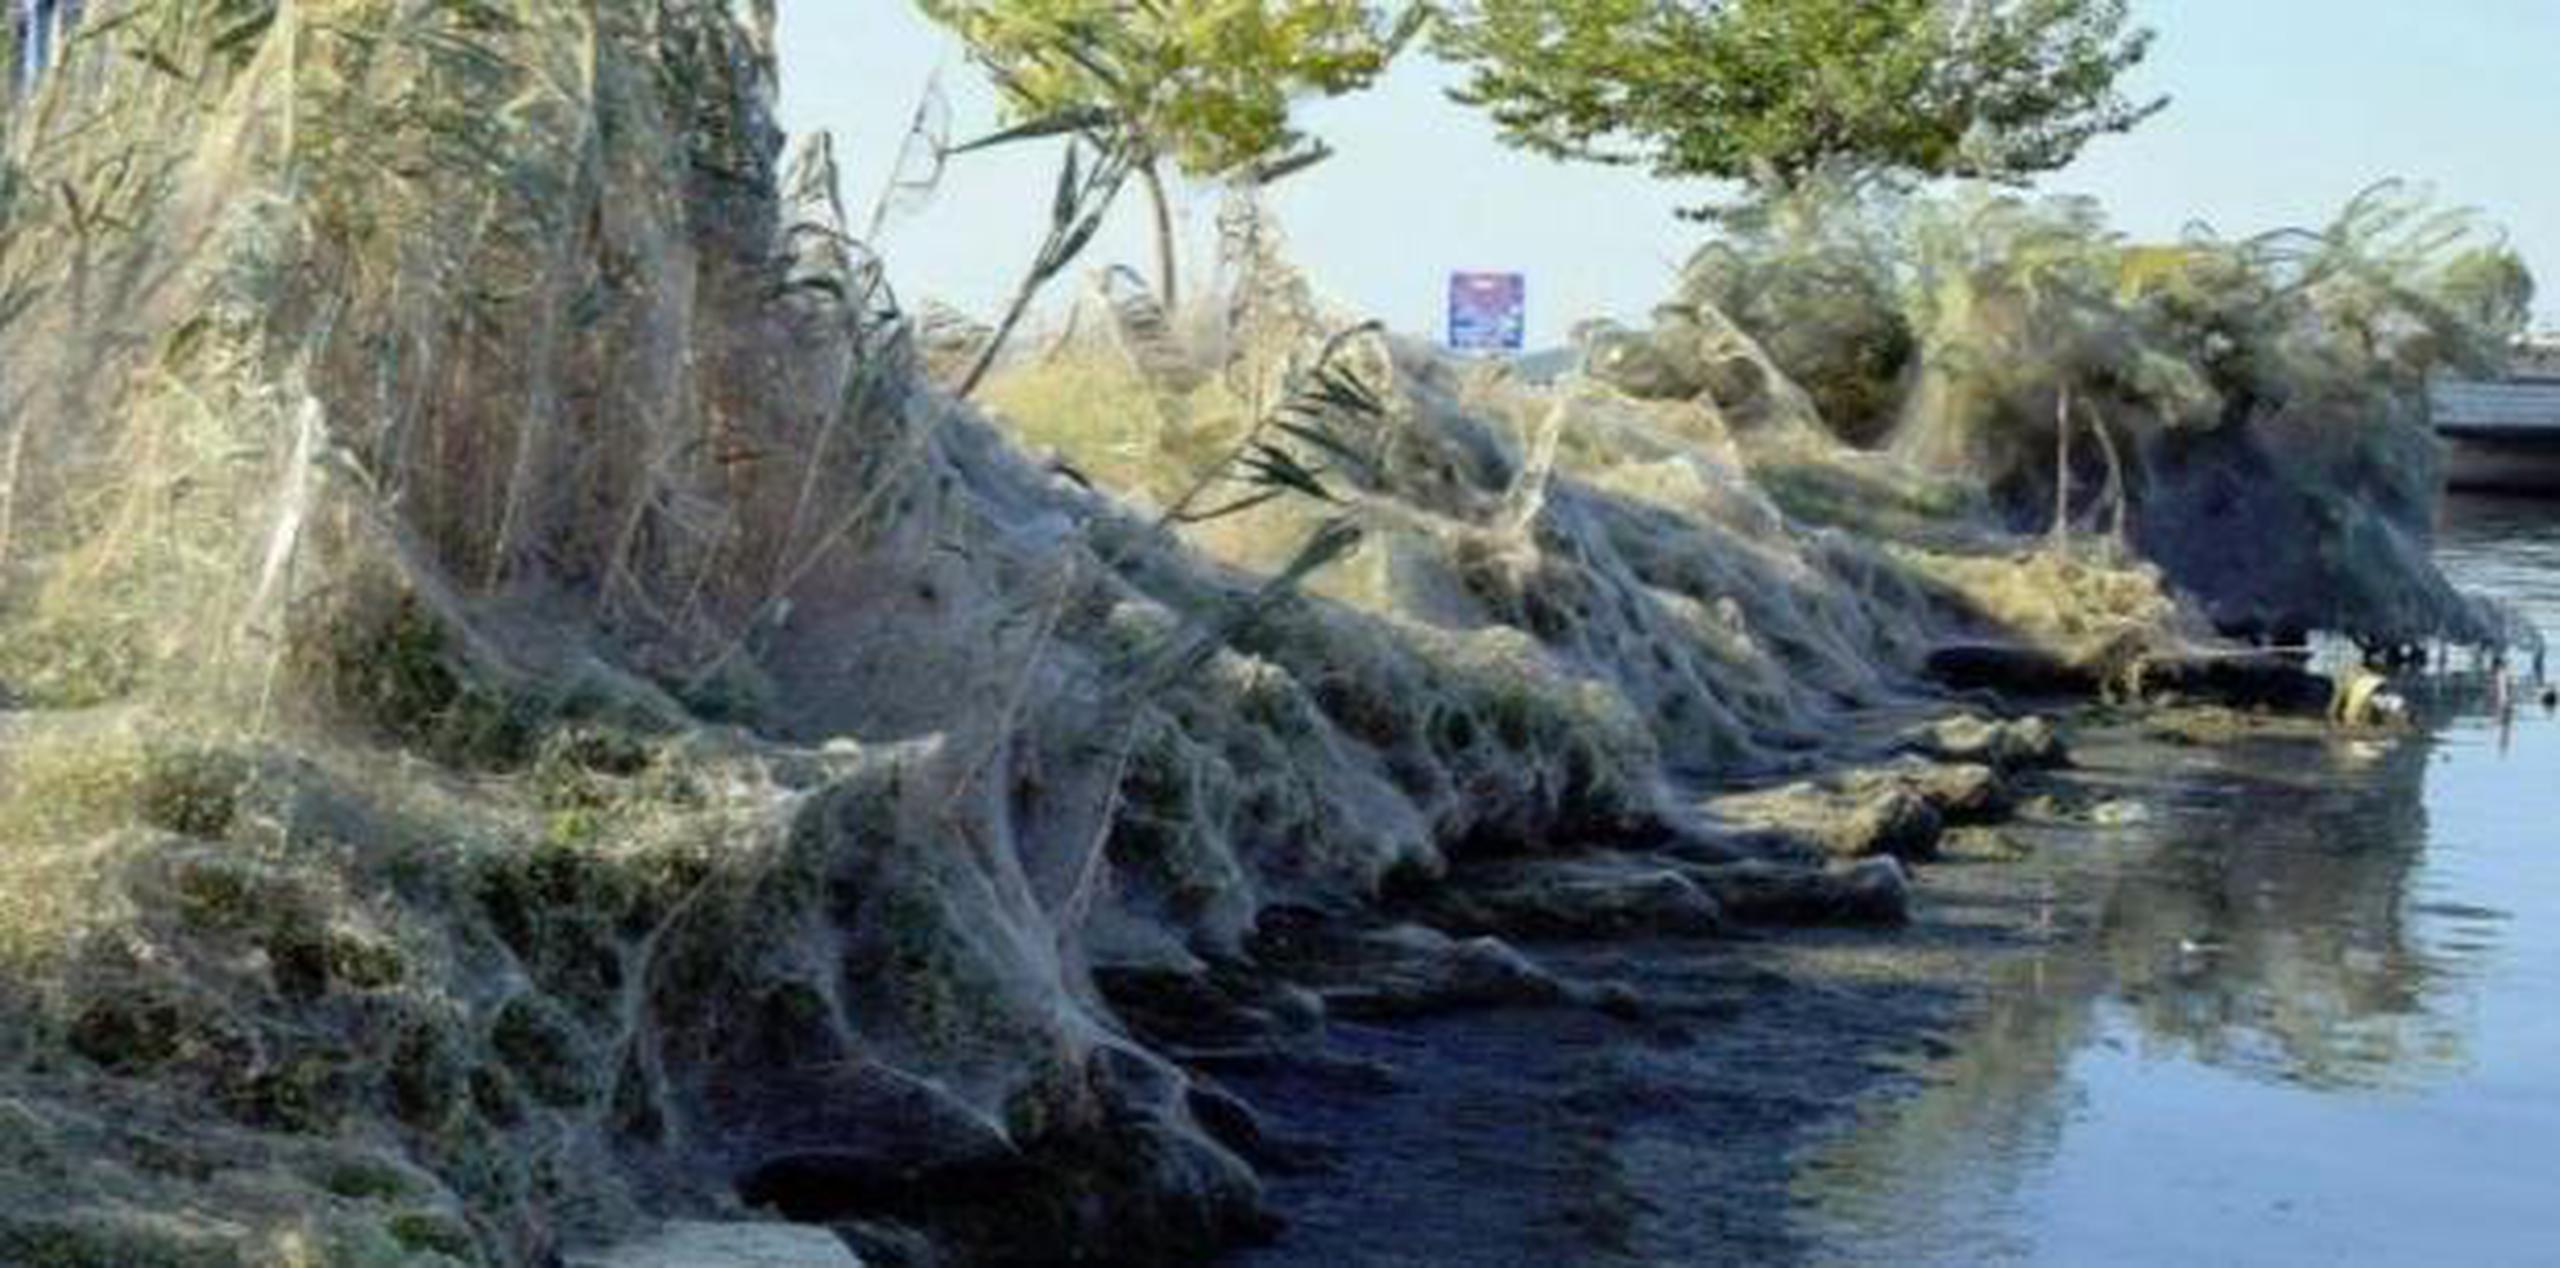 Los locales e incluso los turistas de este pueblo conocían las costumbres de las arañas, que tejen enormes telarañas con las que envuelven los árboles y arbustos cercanos al lago Aitoliko, informó La Vanguardia. (EFE)